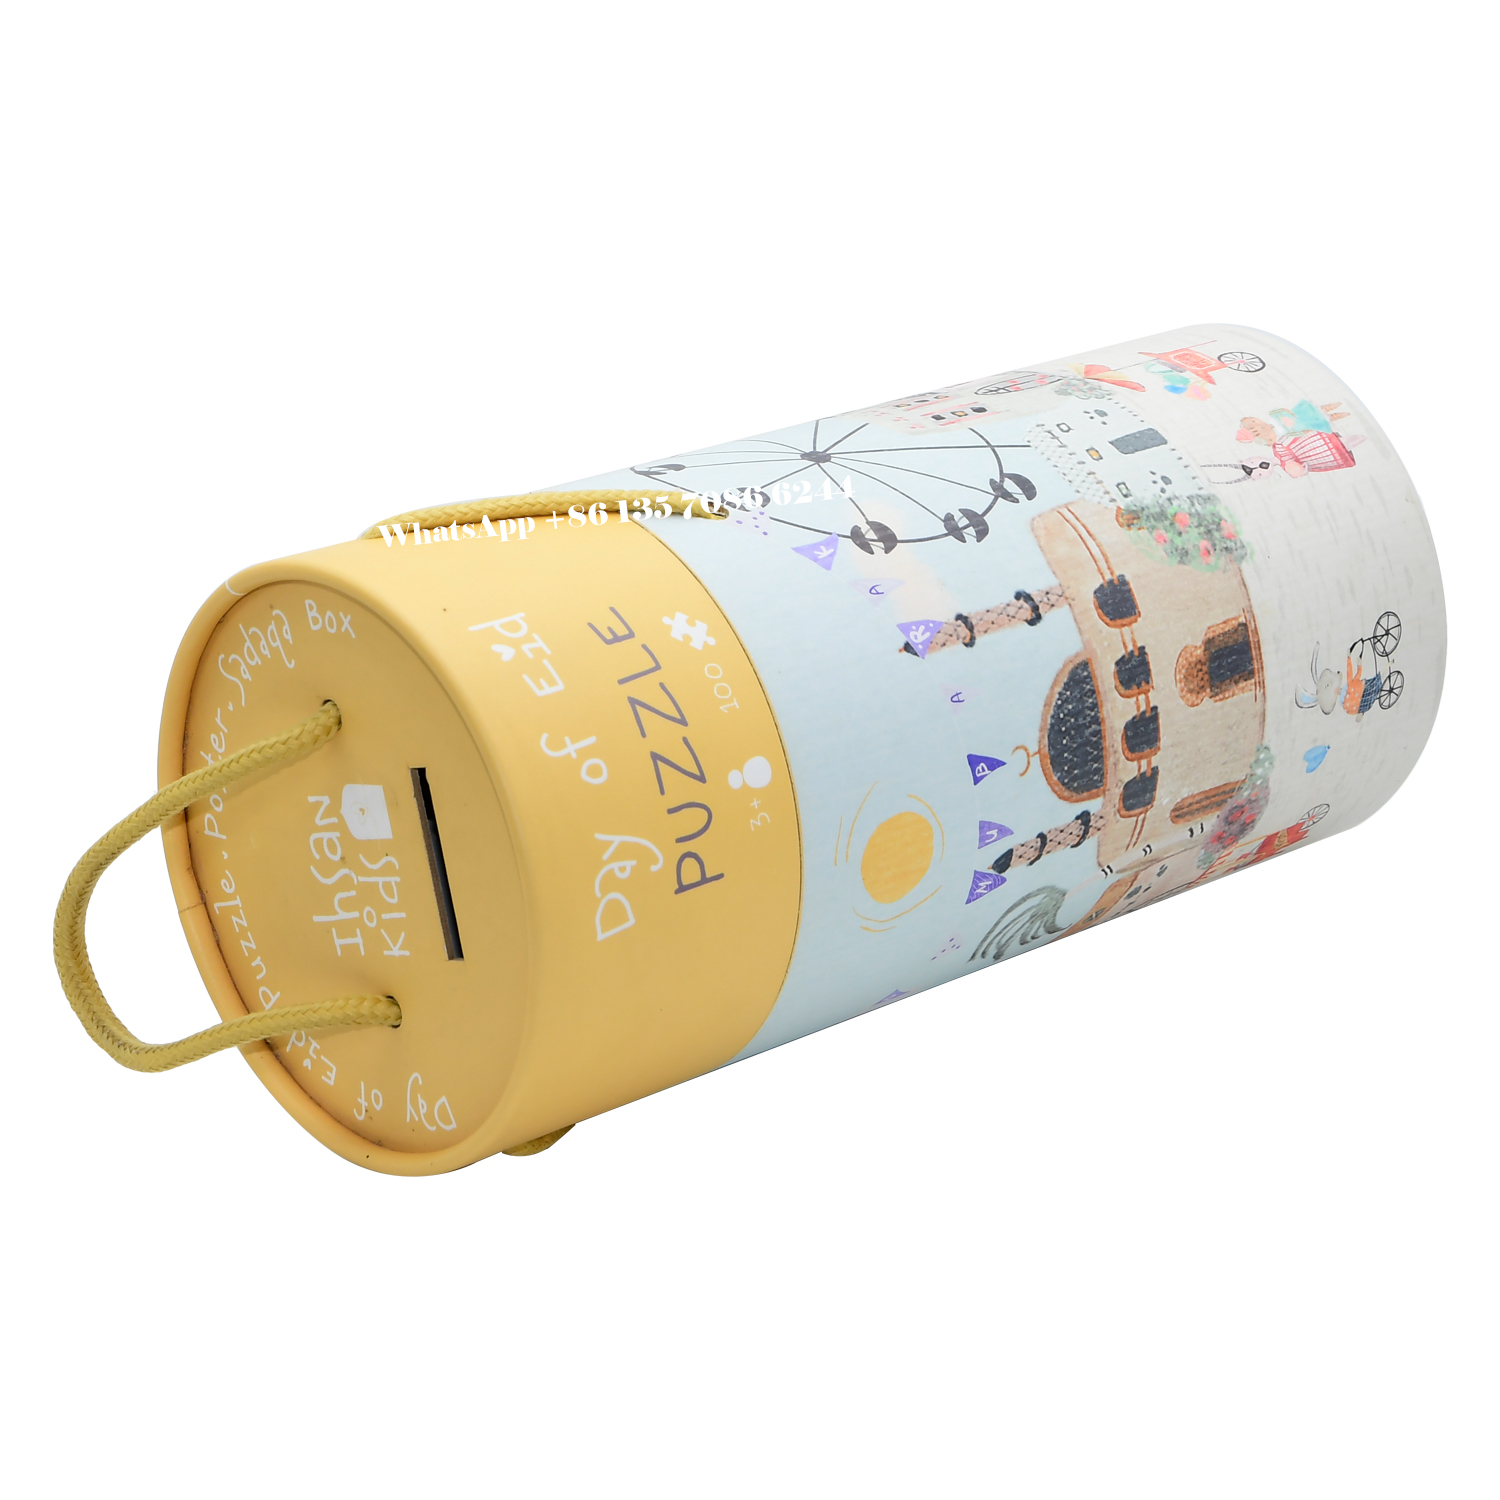  Emballage de tubes en papier pour puzzle, boîtes cylindriques en carton  